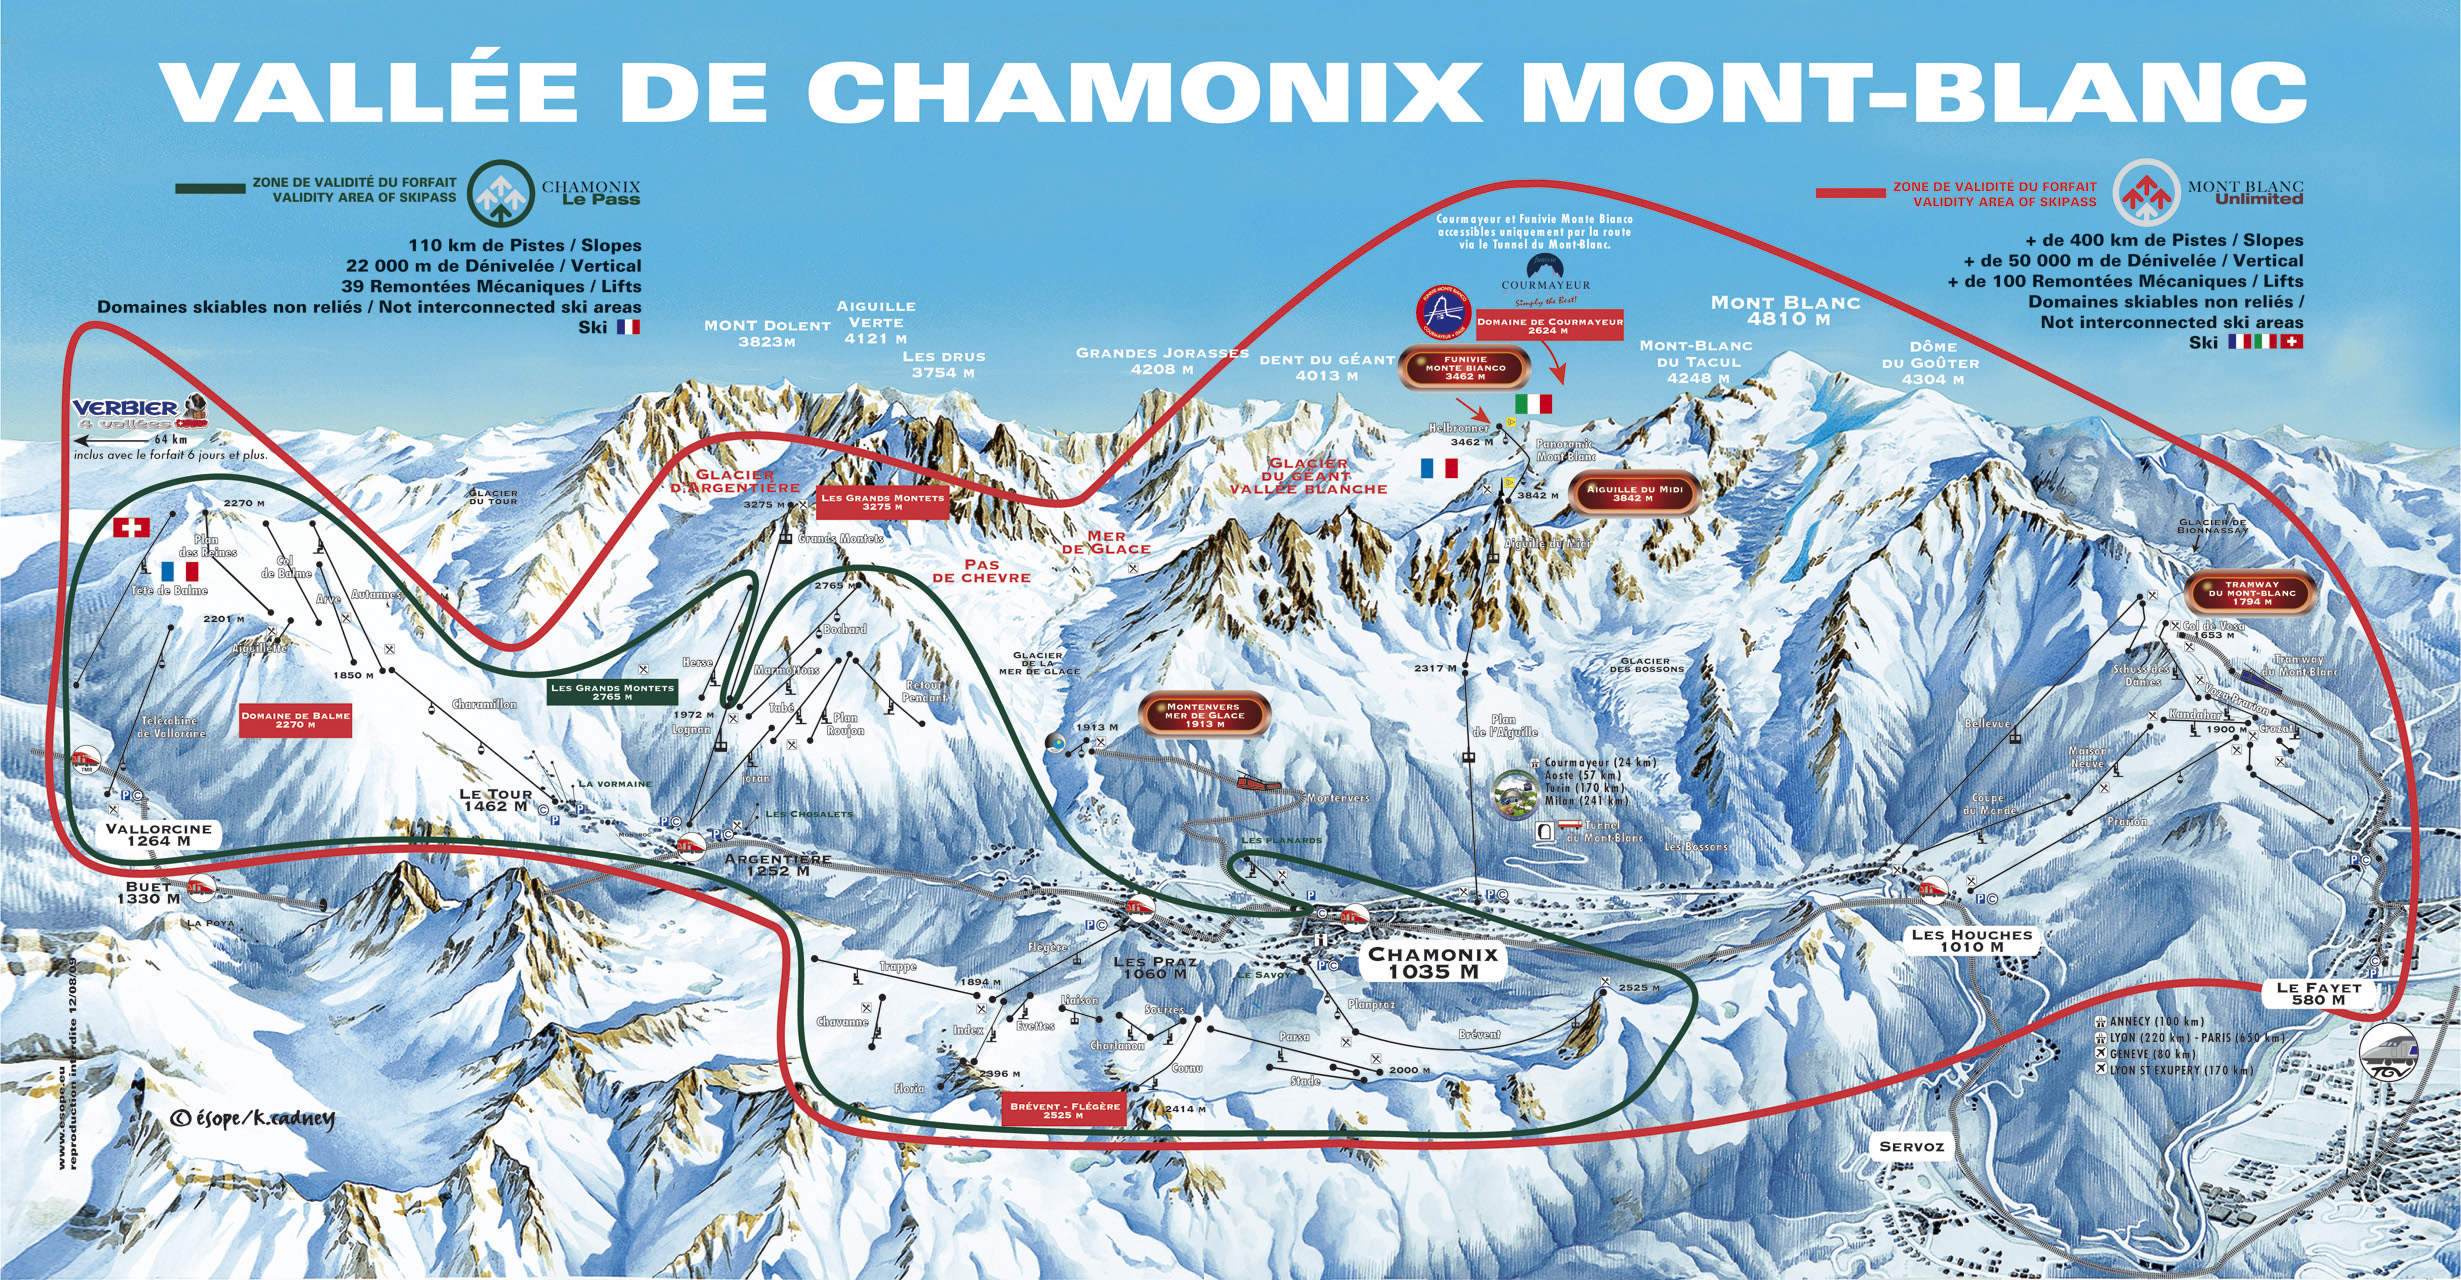 Chamonix MontBlanc 2o22